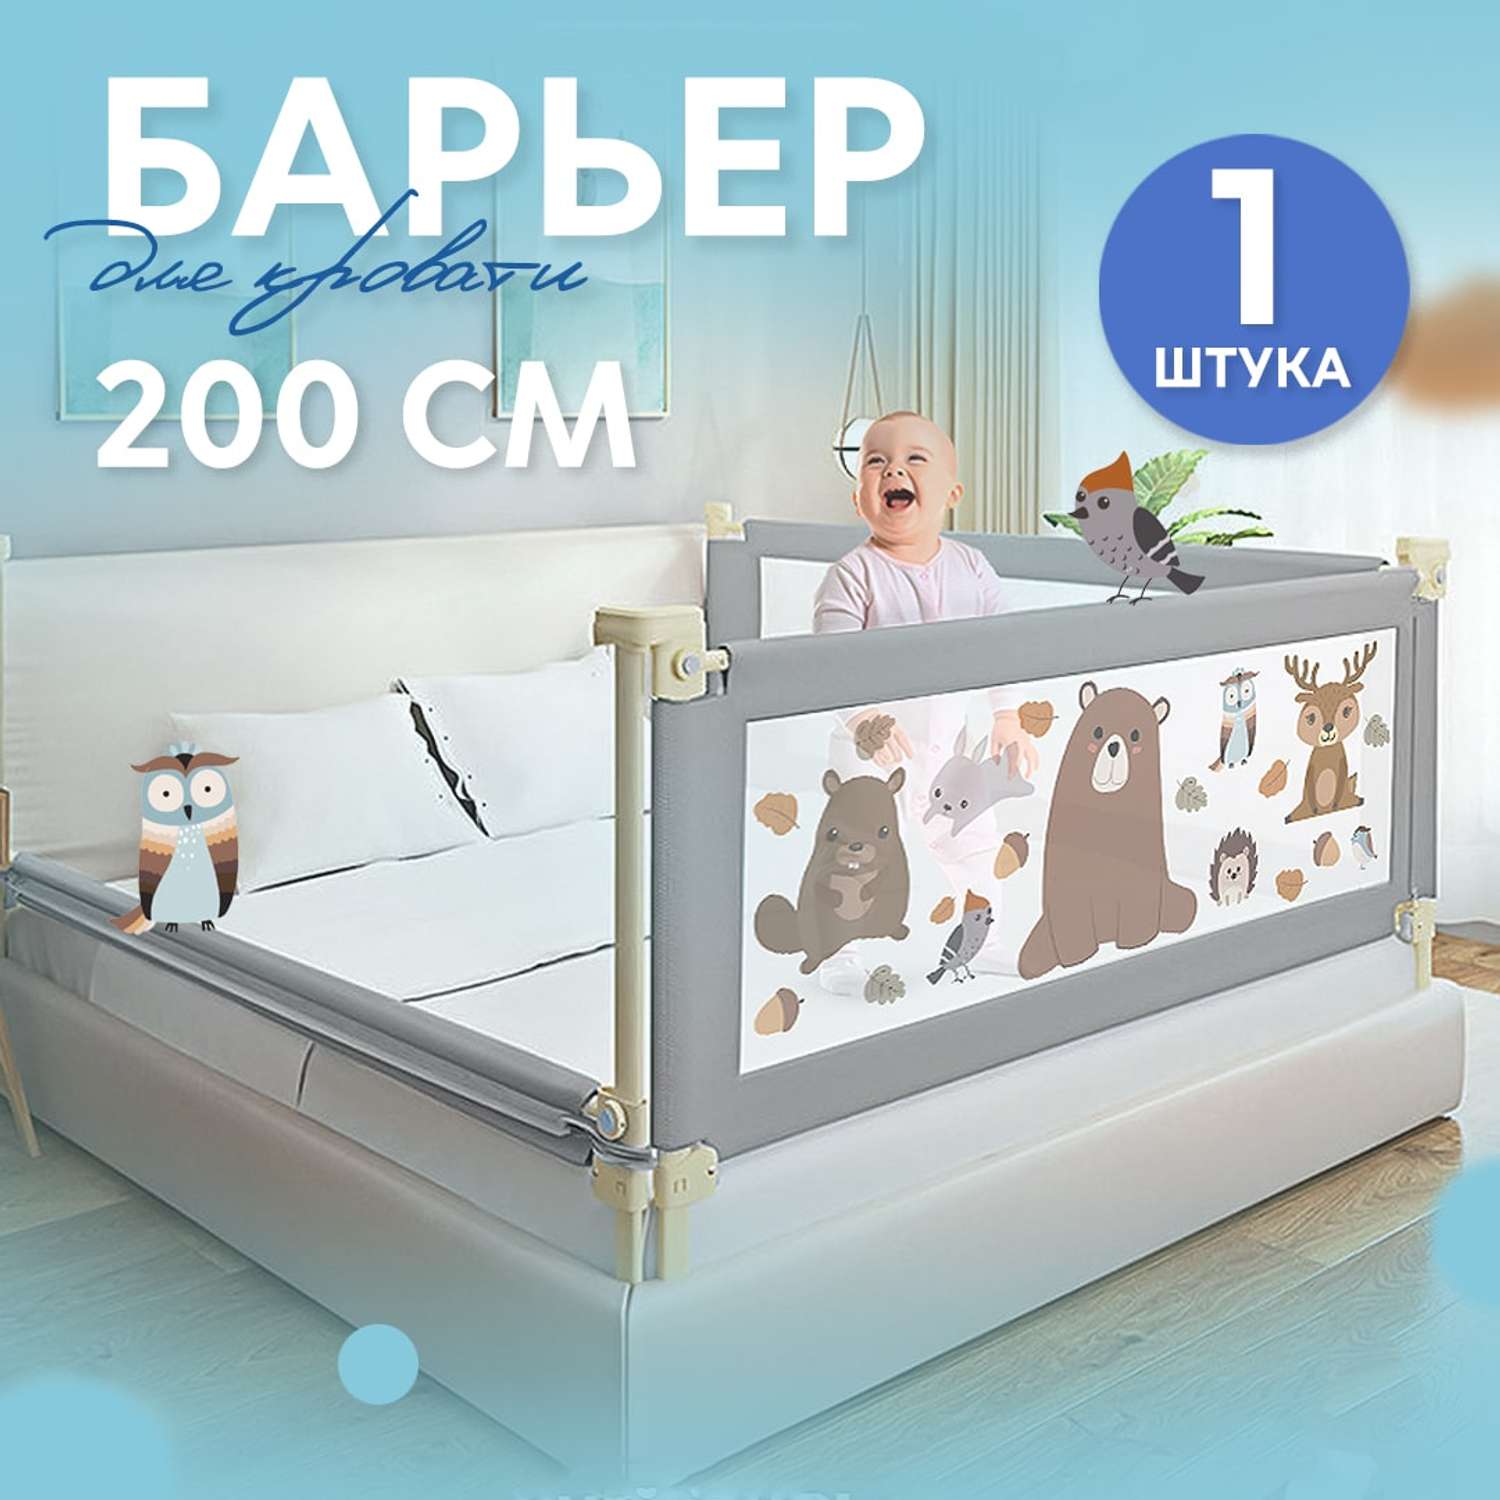 Защитный барьер для кровати CINLANKIDS 200 см 1 шт - фото 1